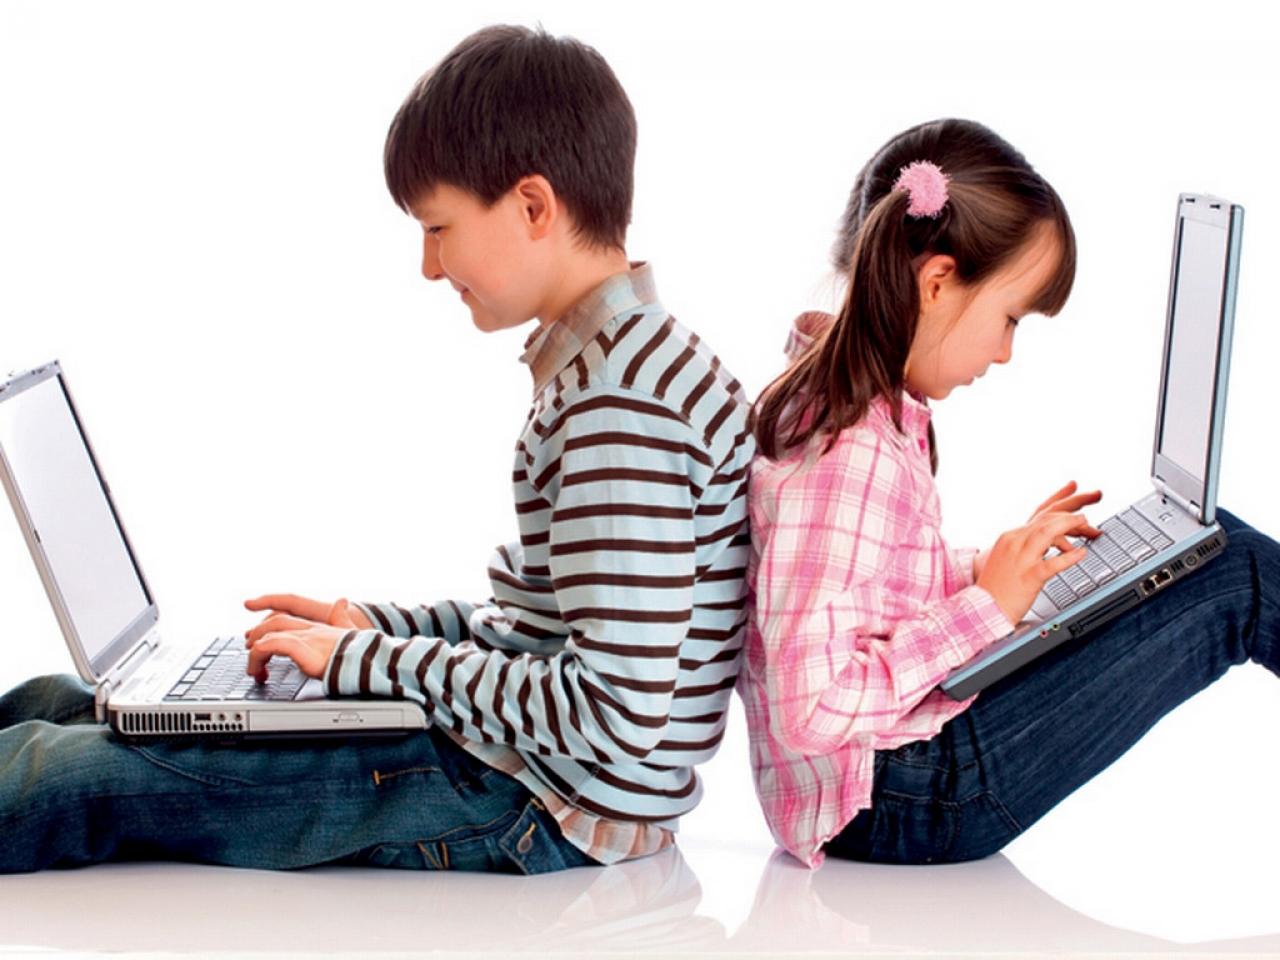 Ребенок переписывается. Компьютерная зависимость. Подросток и компьютер. Компьютер для детей. Зависимость подростков от компьютера.